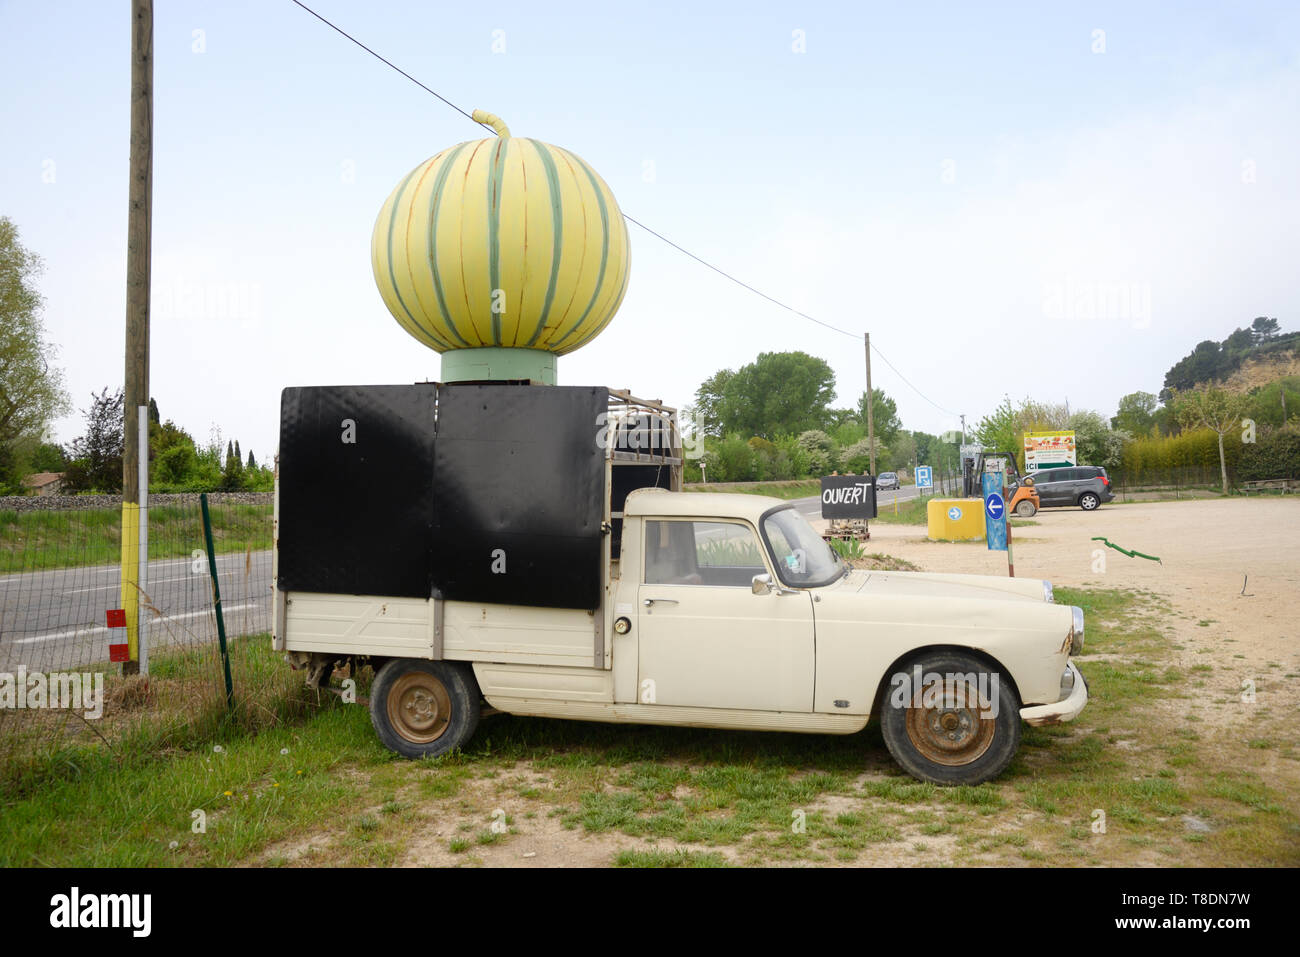 Riesen Melone Werbung auf Werbung Auto am Straßenrand Obst & Gemüse Marktstand in der Nähe von Lauris Luberon Frankreich Stockfoto